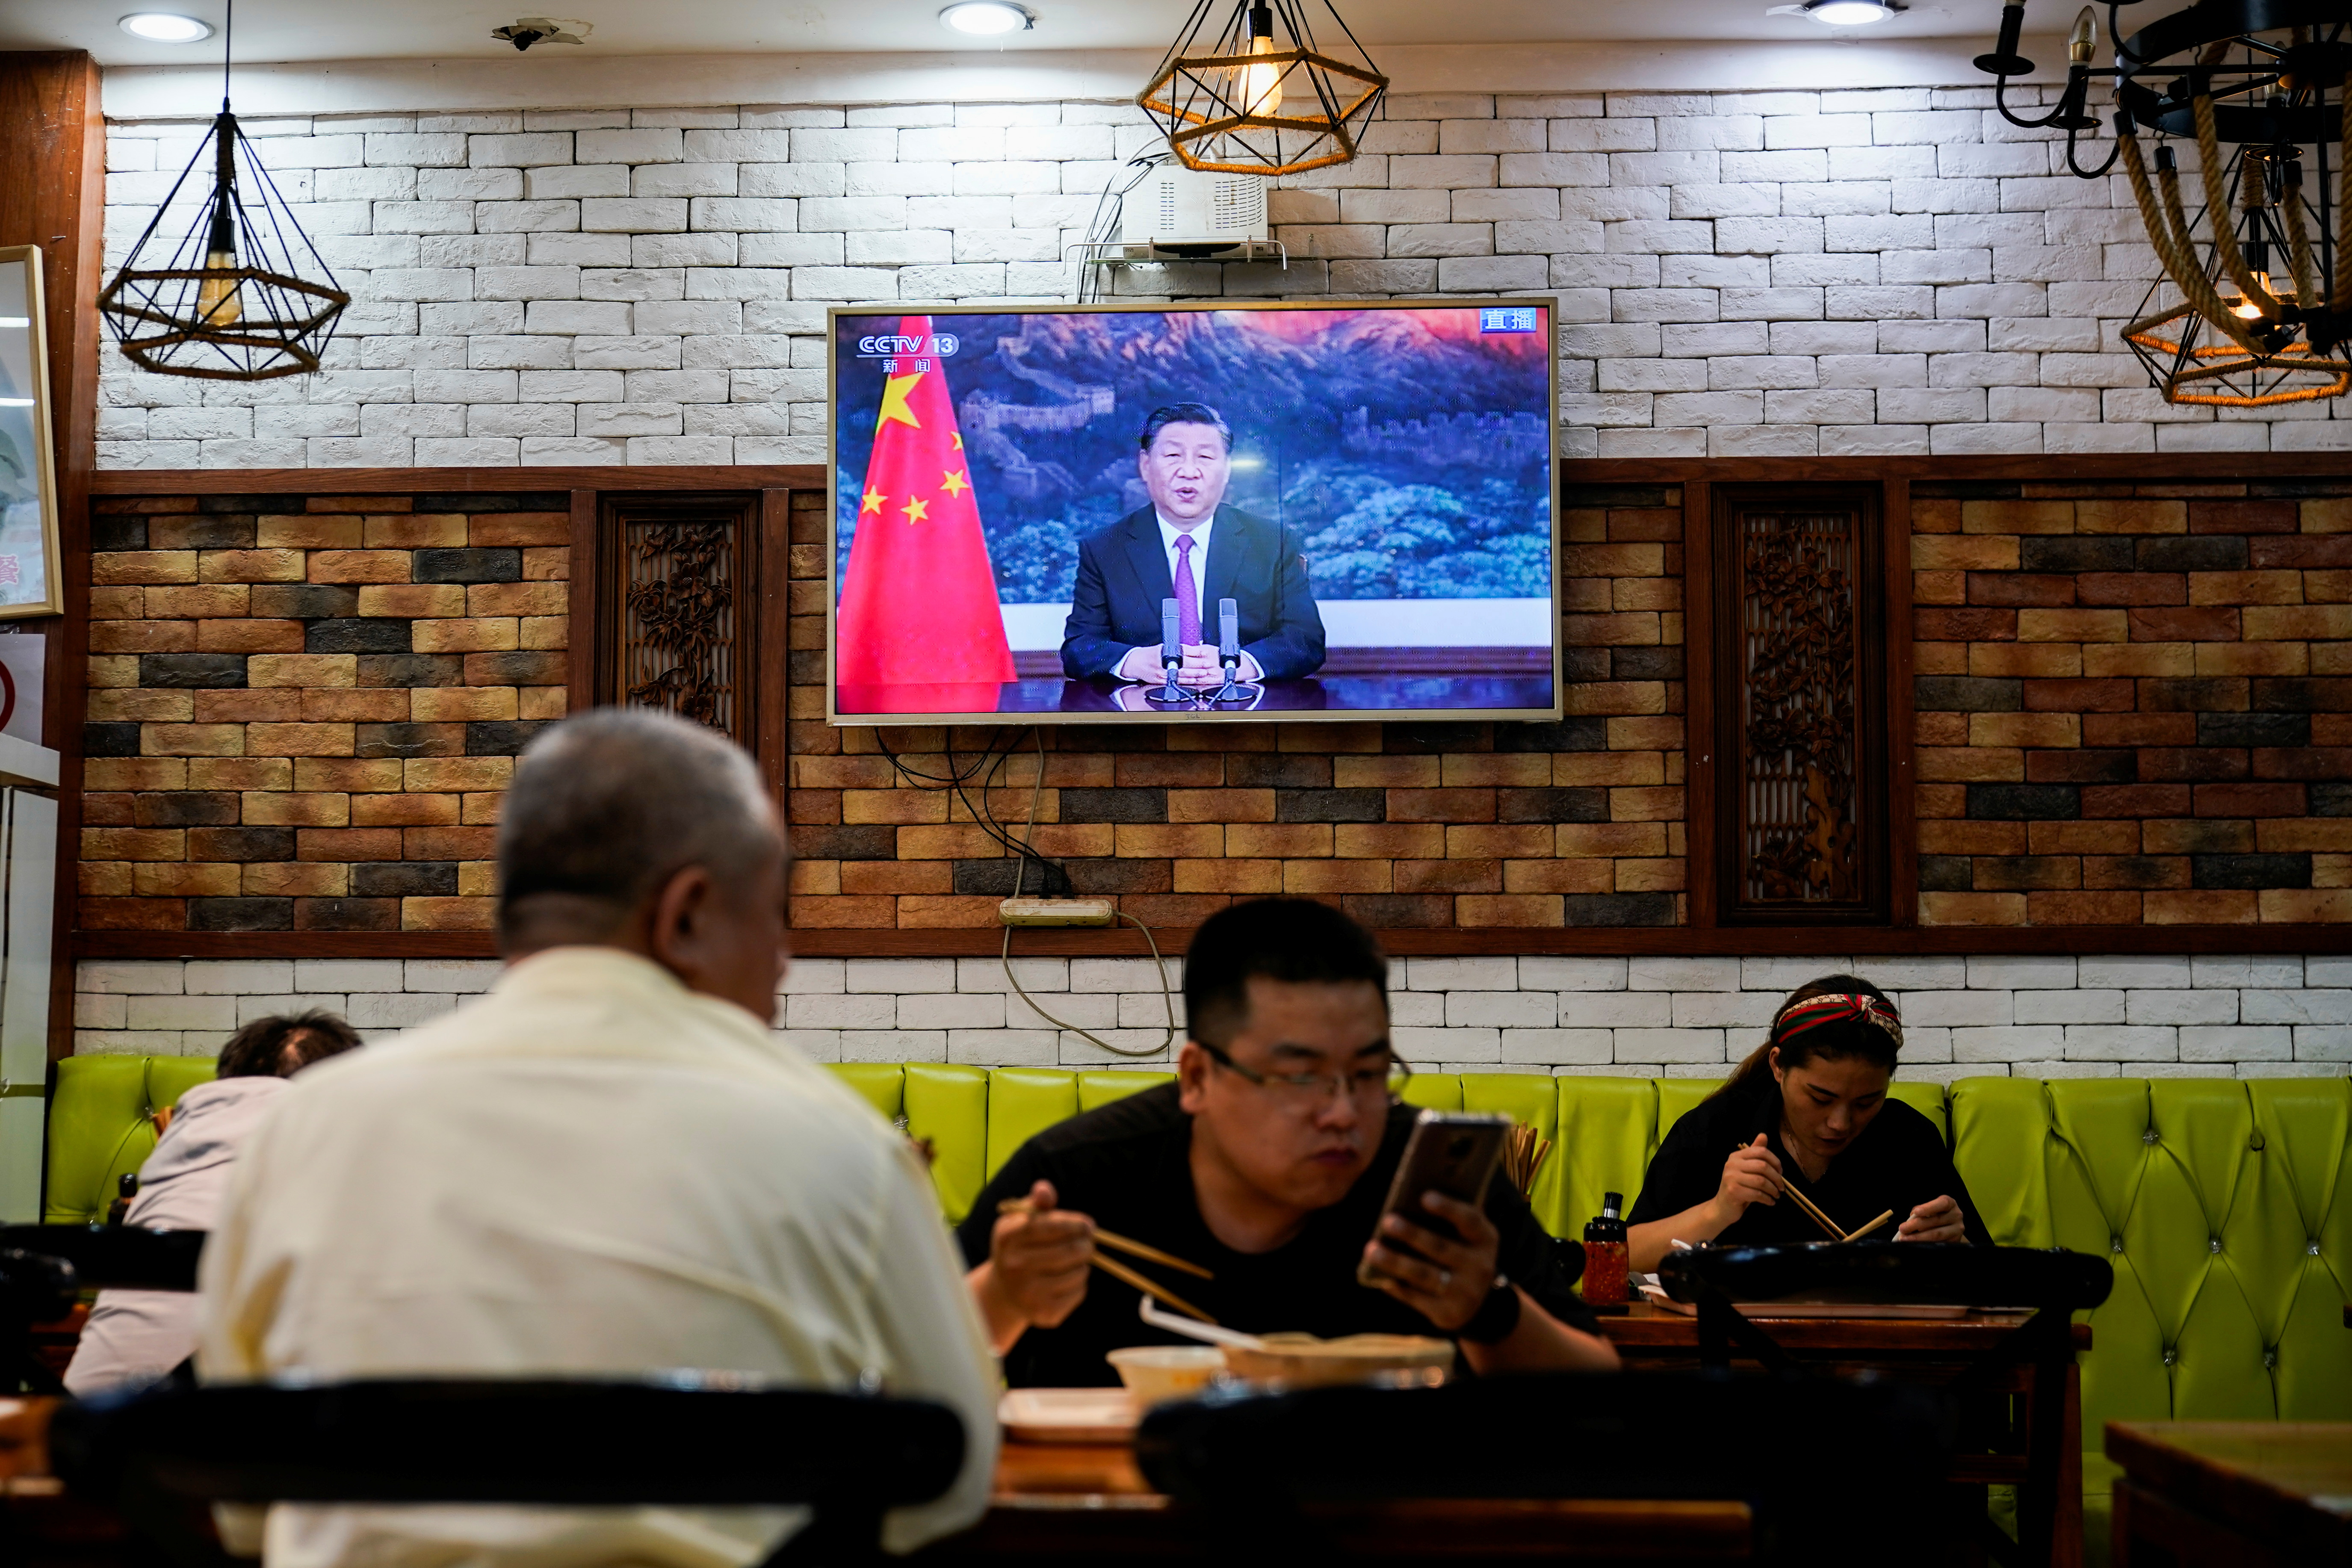 El presidente chino Xi Jinping es visto en una pantalla de televisión en un restaurante de Shanghái (Foto: REUTERS)